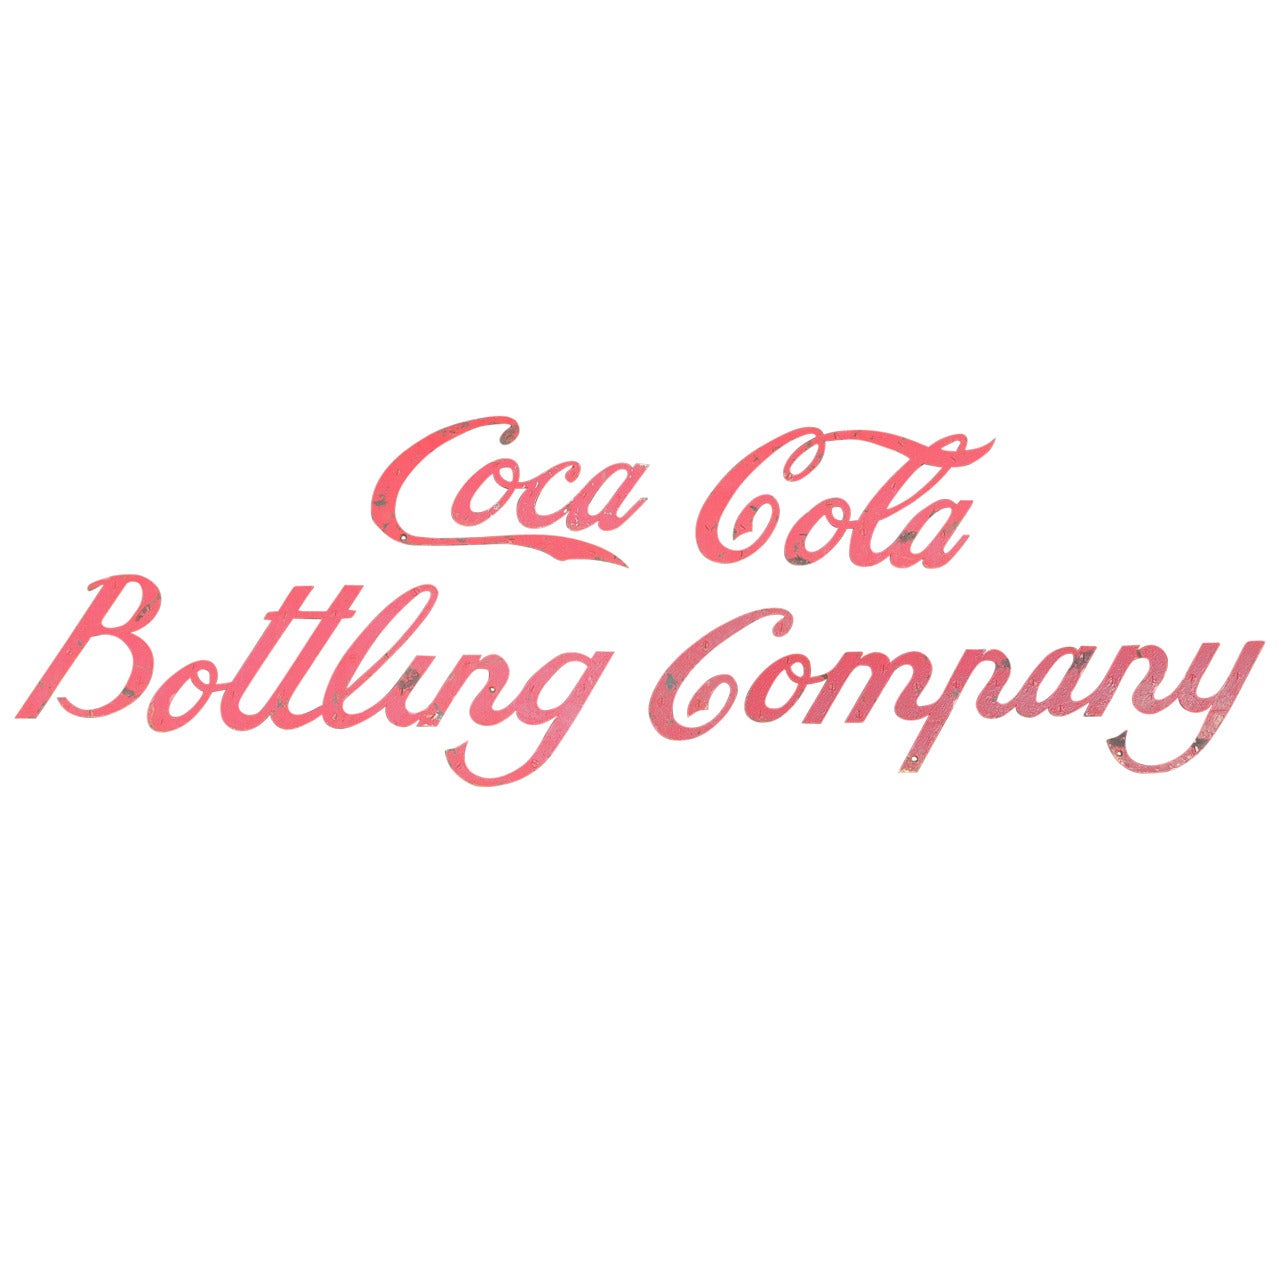 Panneau de la société Coca Cola Bottling Company du début du 20e siècle